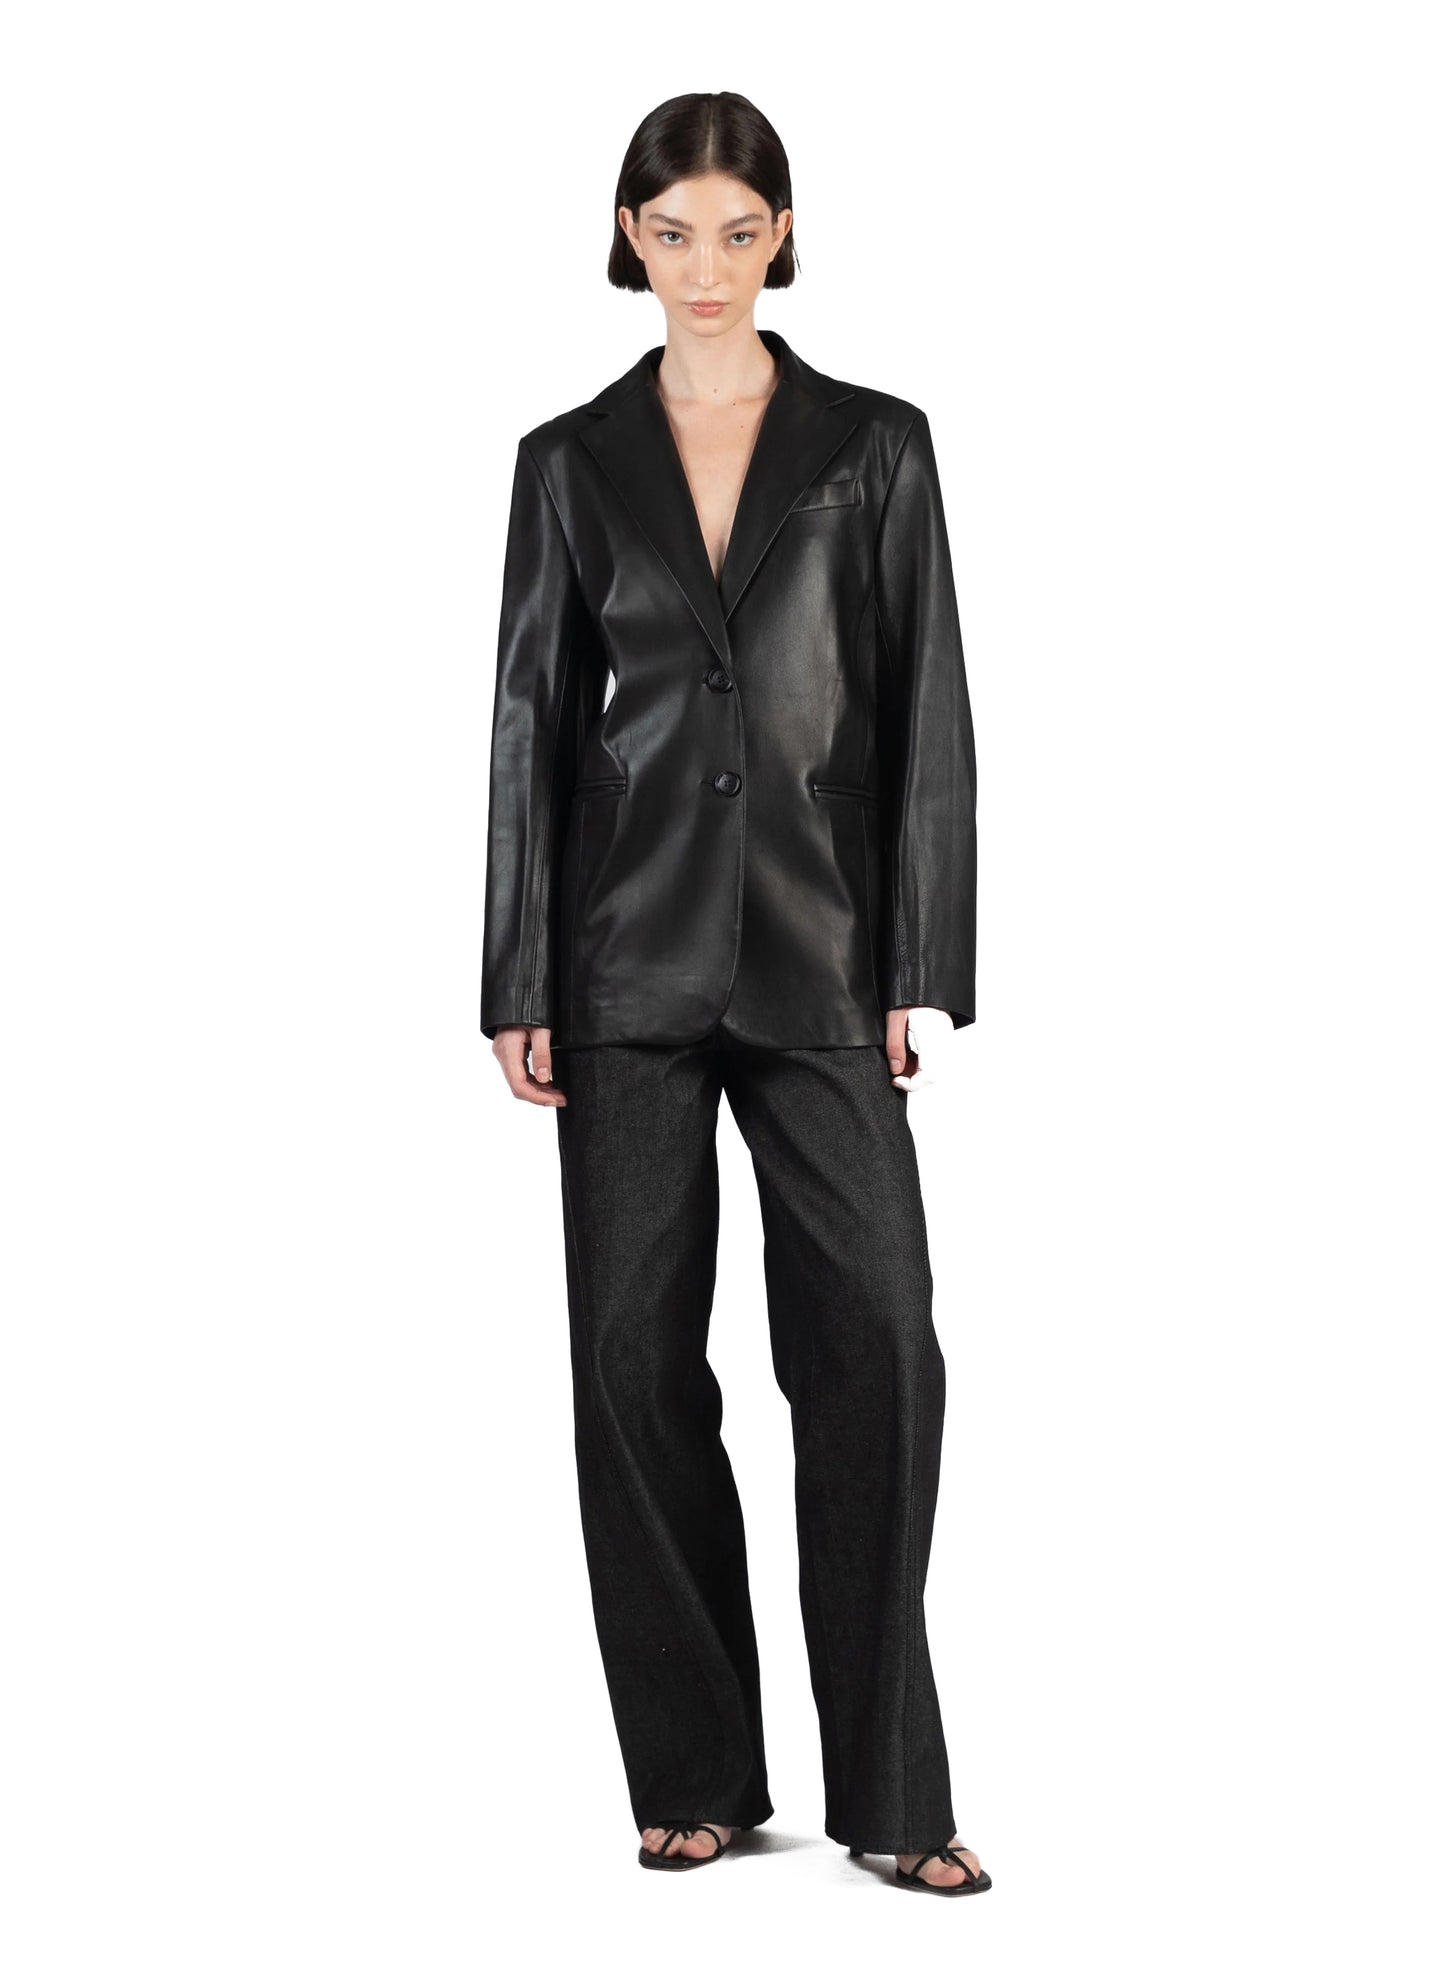 Leather Suit Jacket/Black